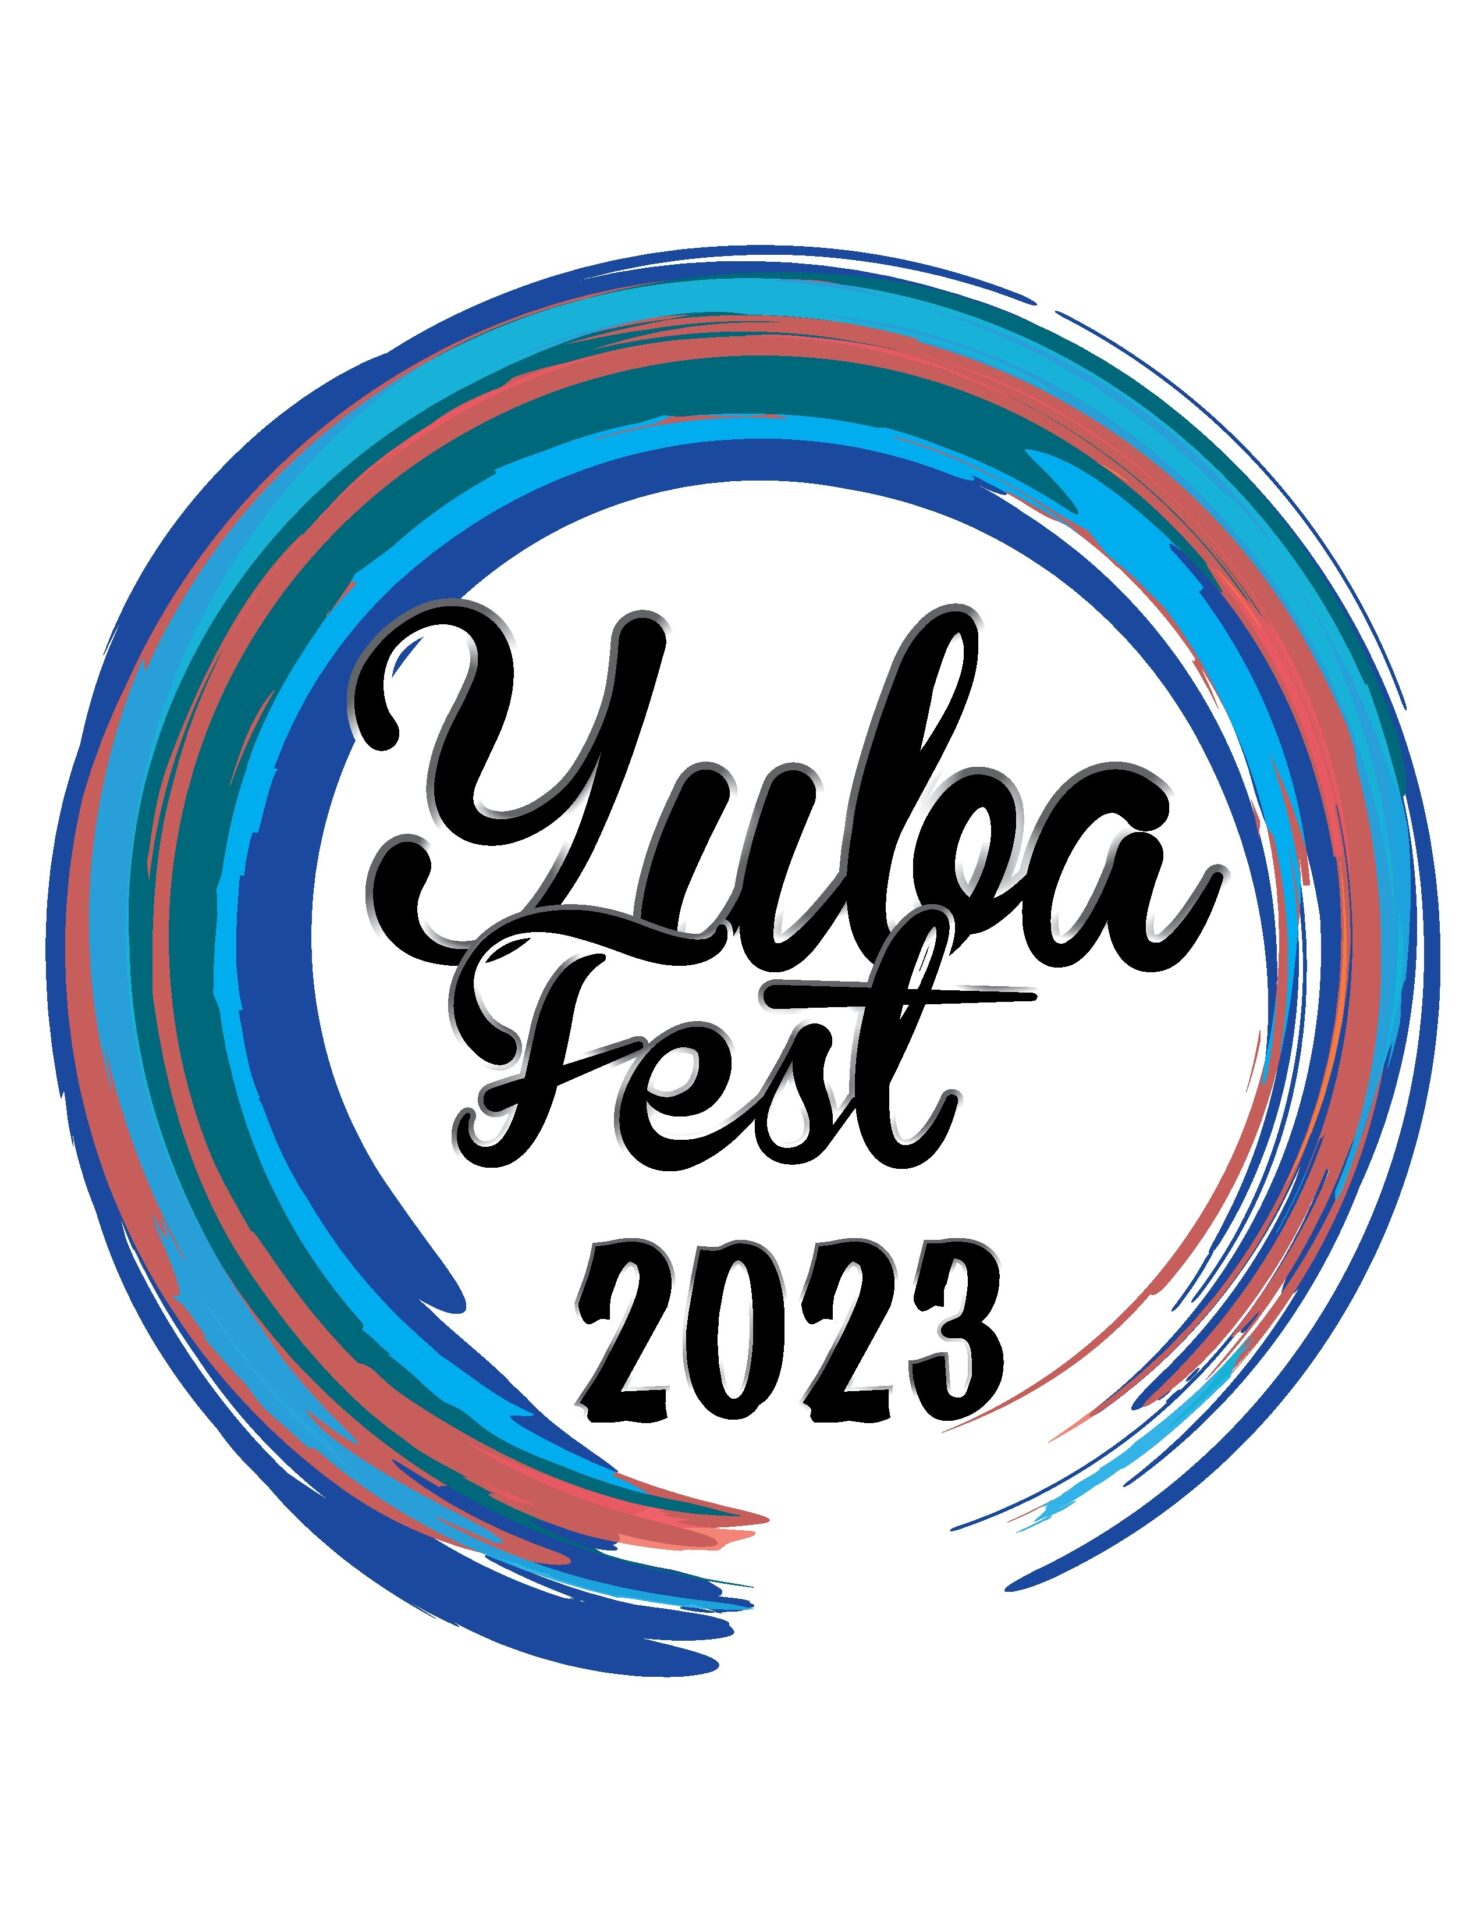 Yuba Fest